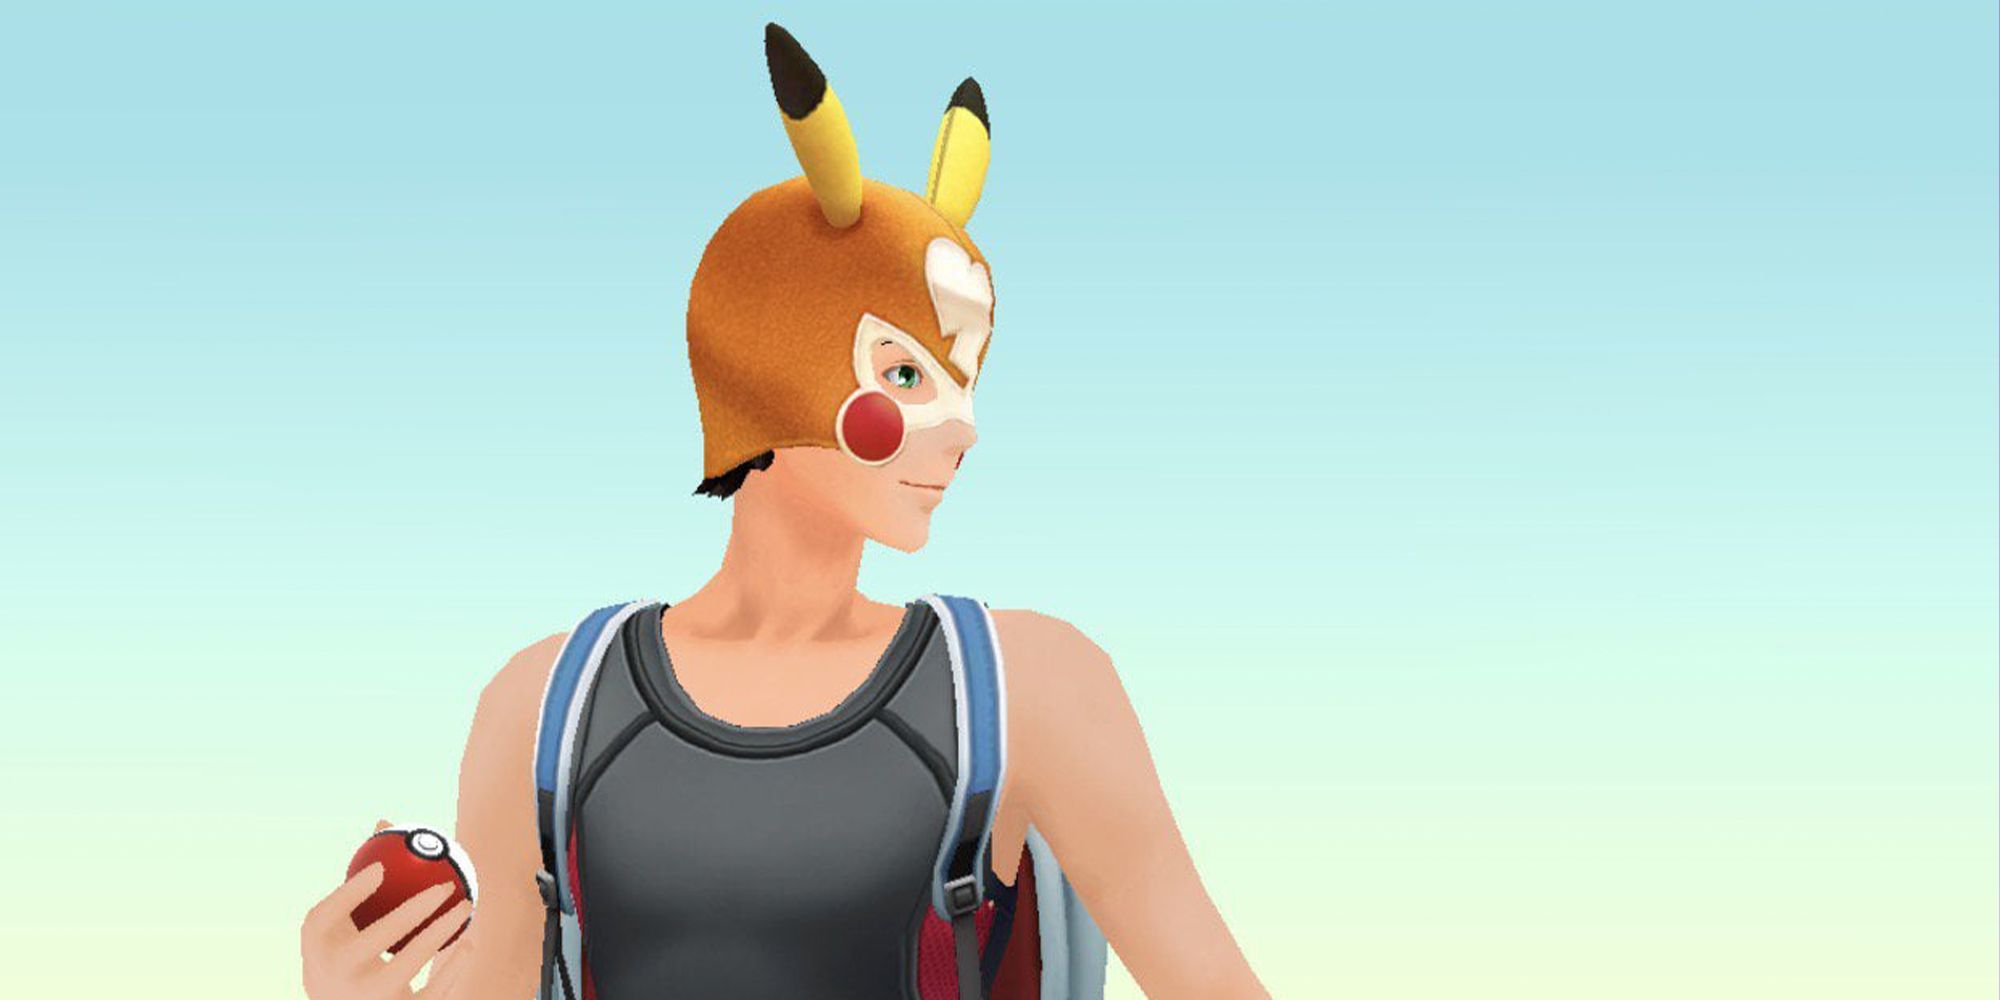 Pokémon Go Libre Pikachu! PvP Reward Exclusive Costume! NOT-Shiny!